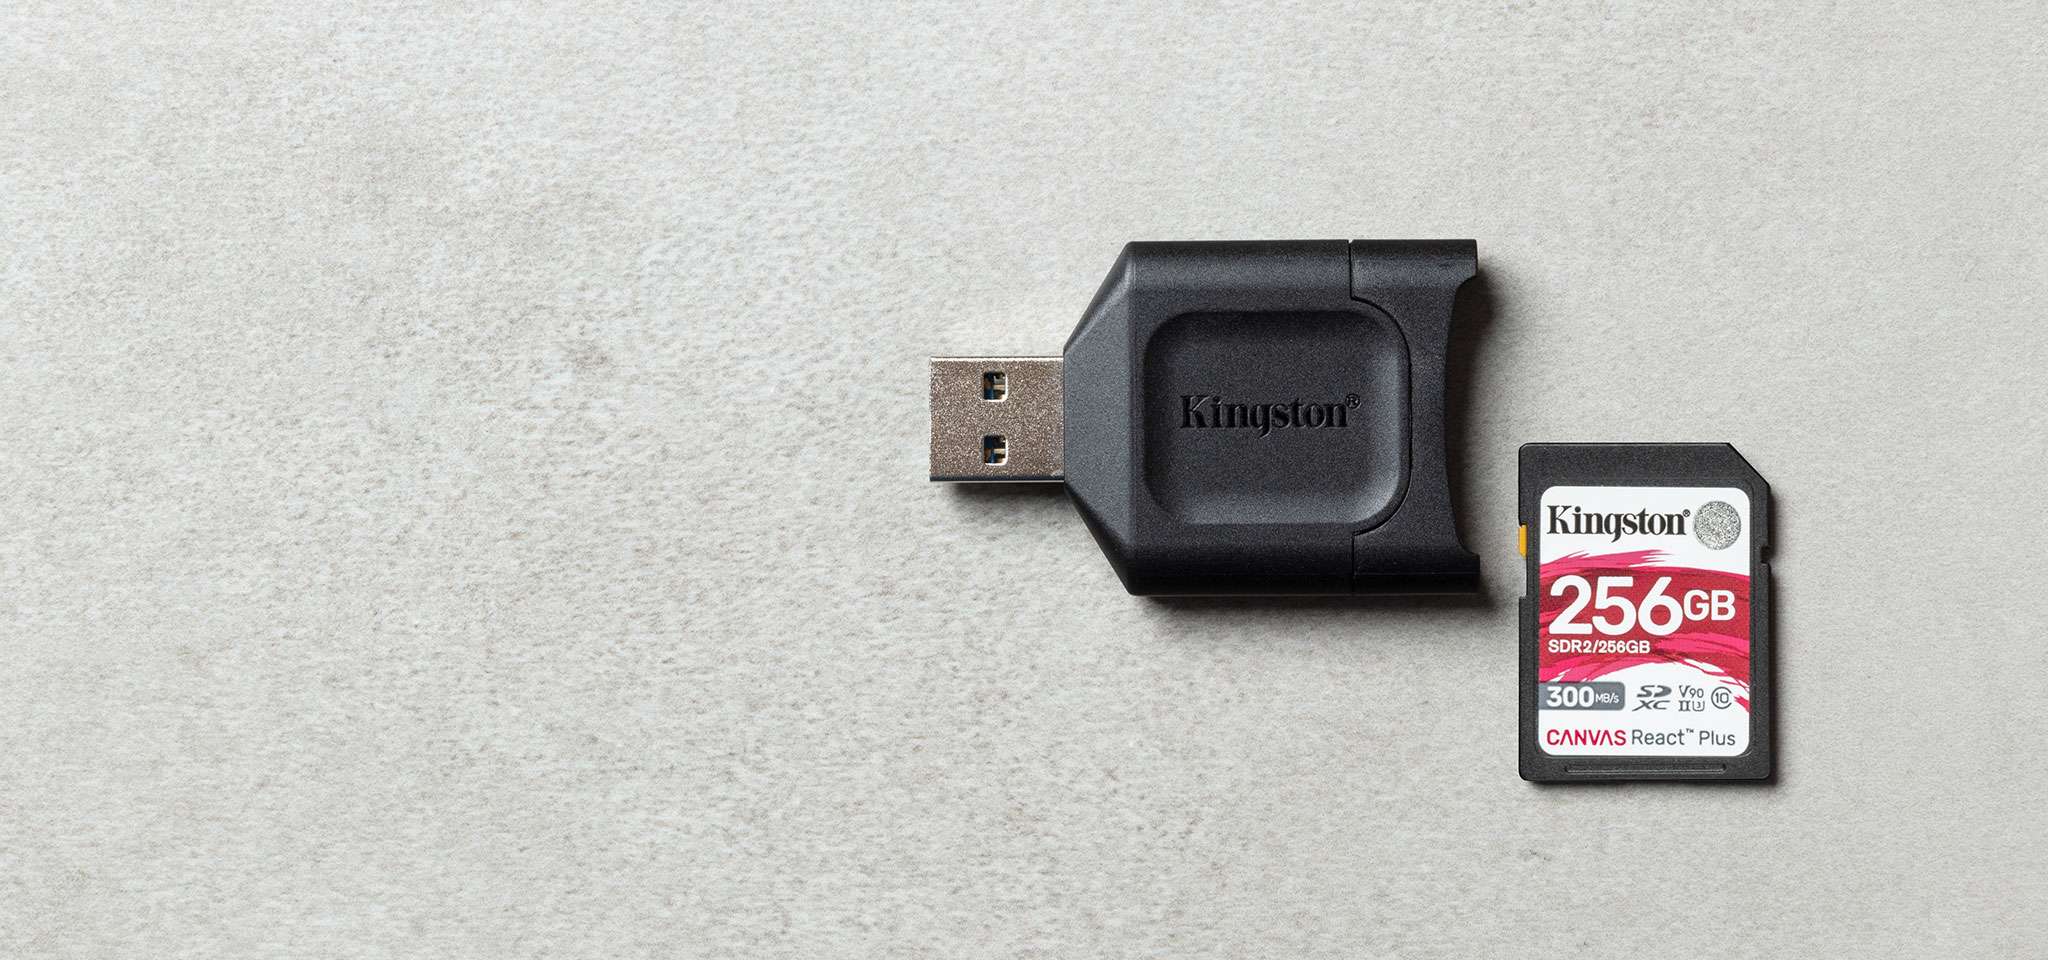 一台 MobileLite Plus SD 讀卡機放置在灰色表面上，旁邊放著一張 Canvas React Plus SD 卡